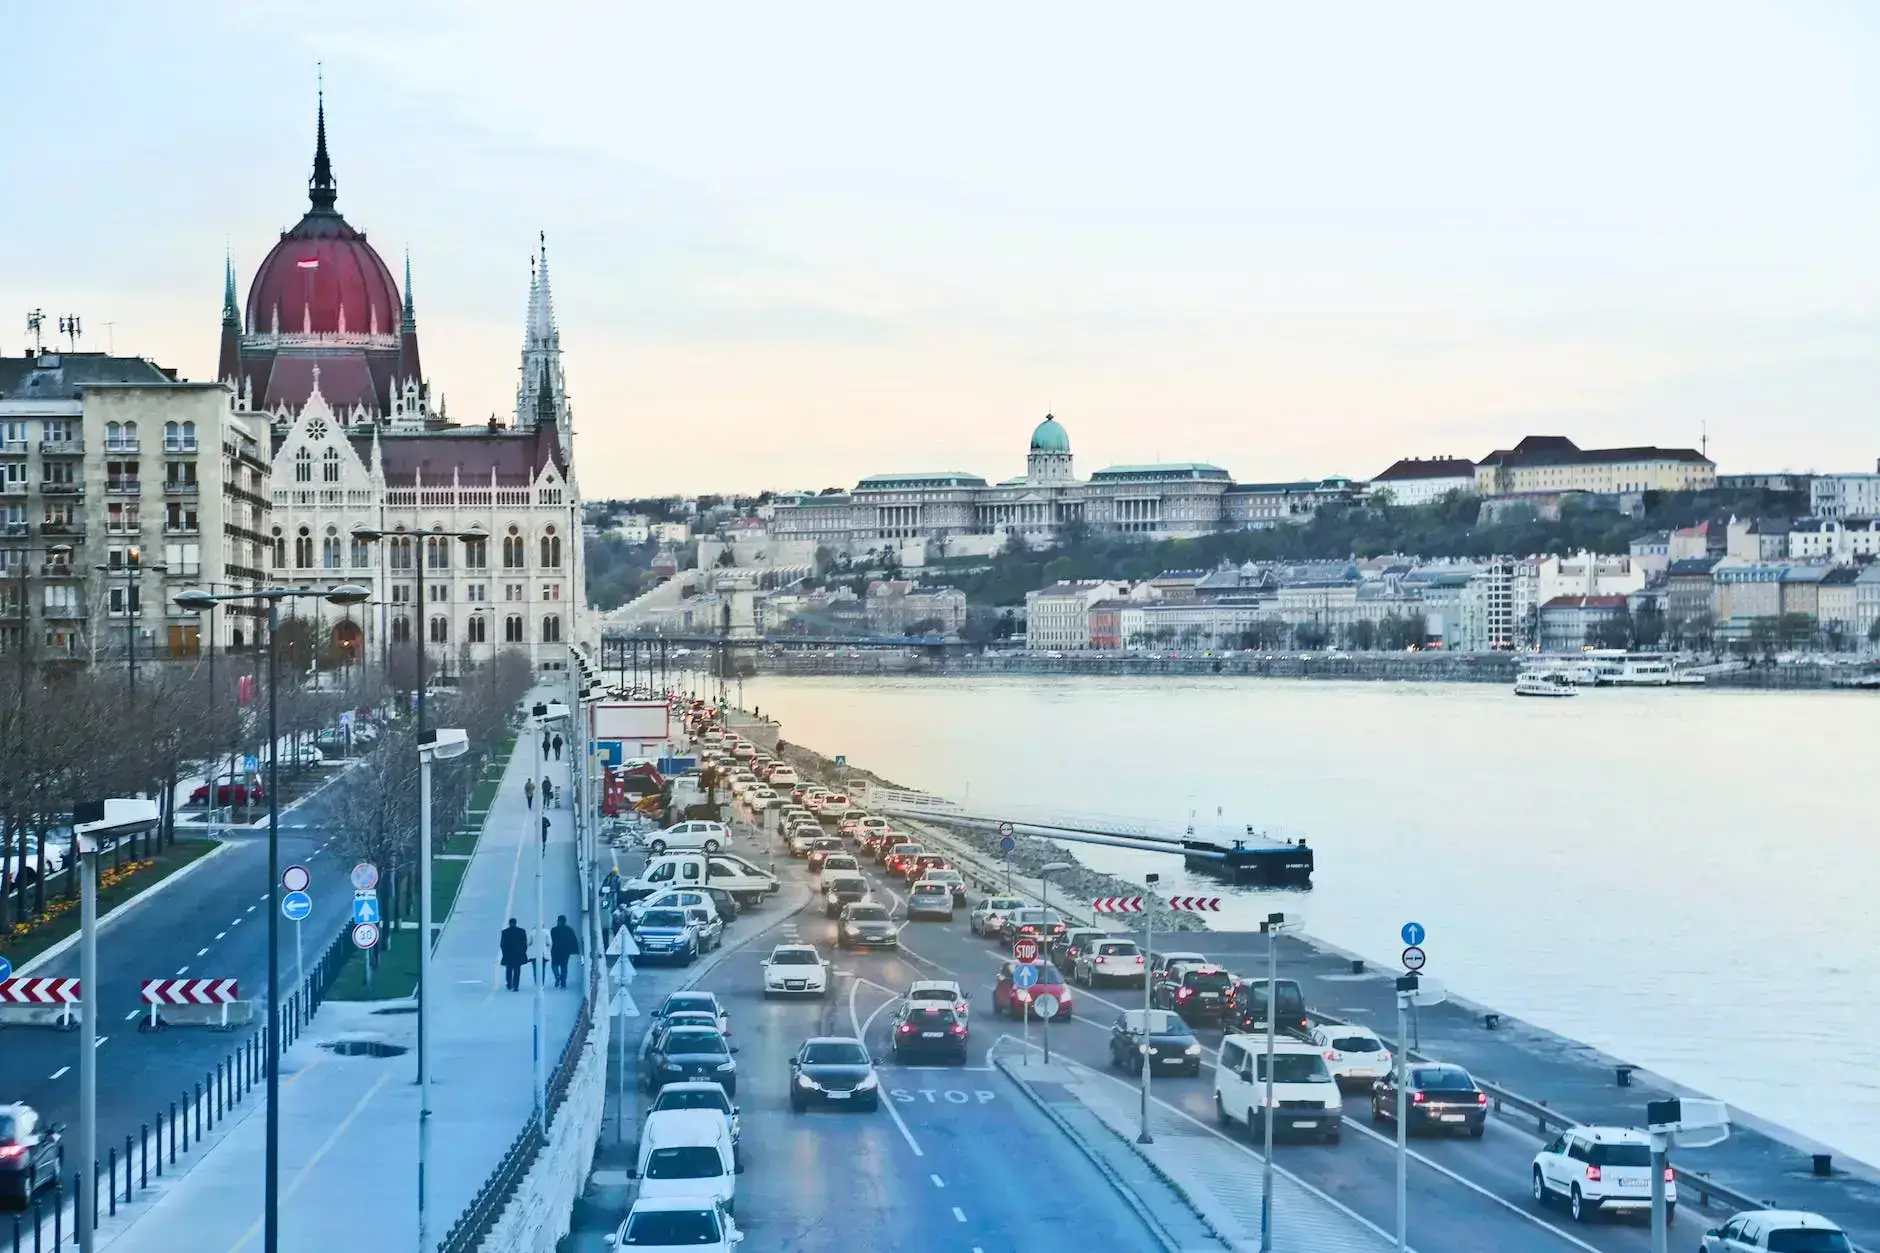 Maďarský dálniční známka - Možnosti cestování v Maďarsku po dálnici